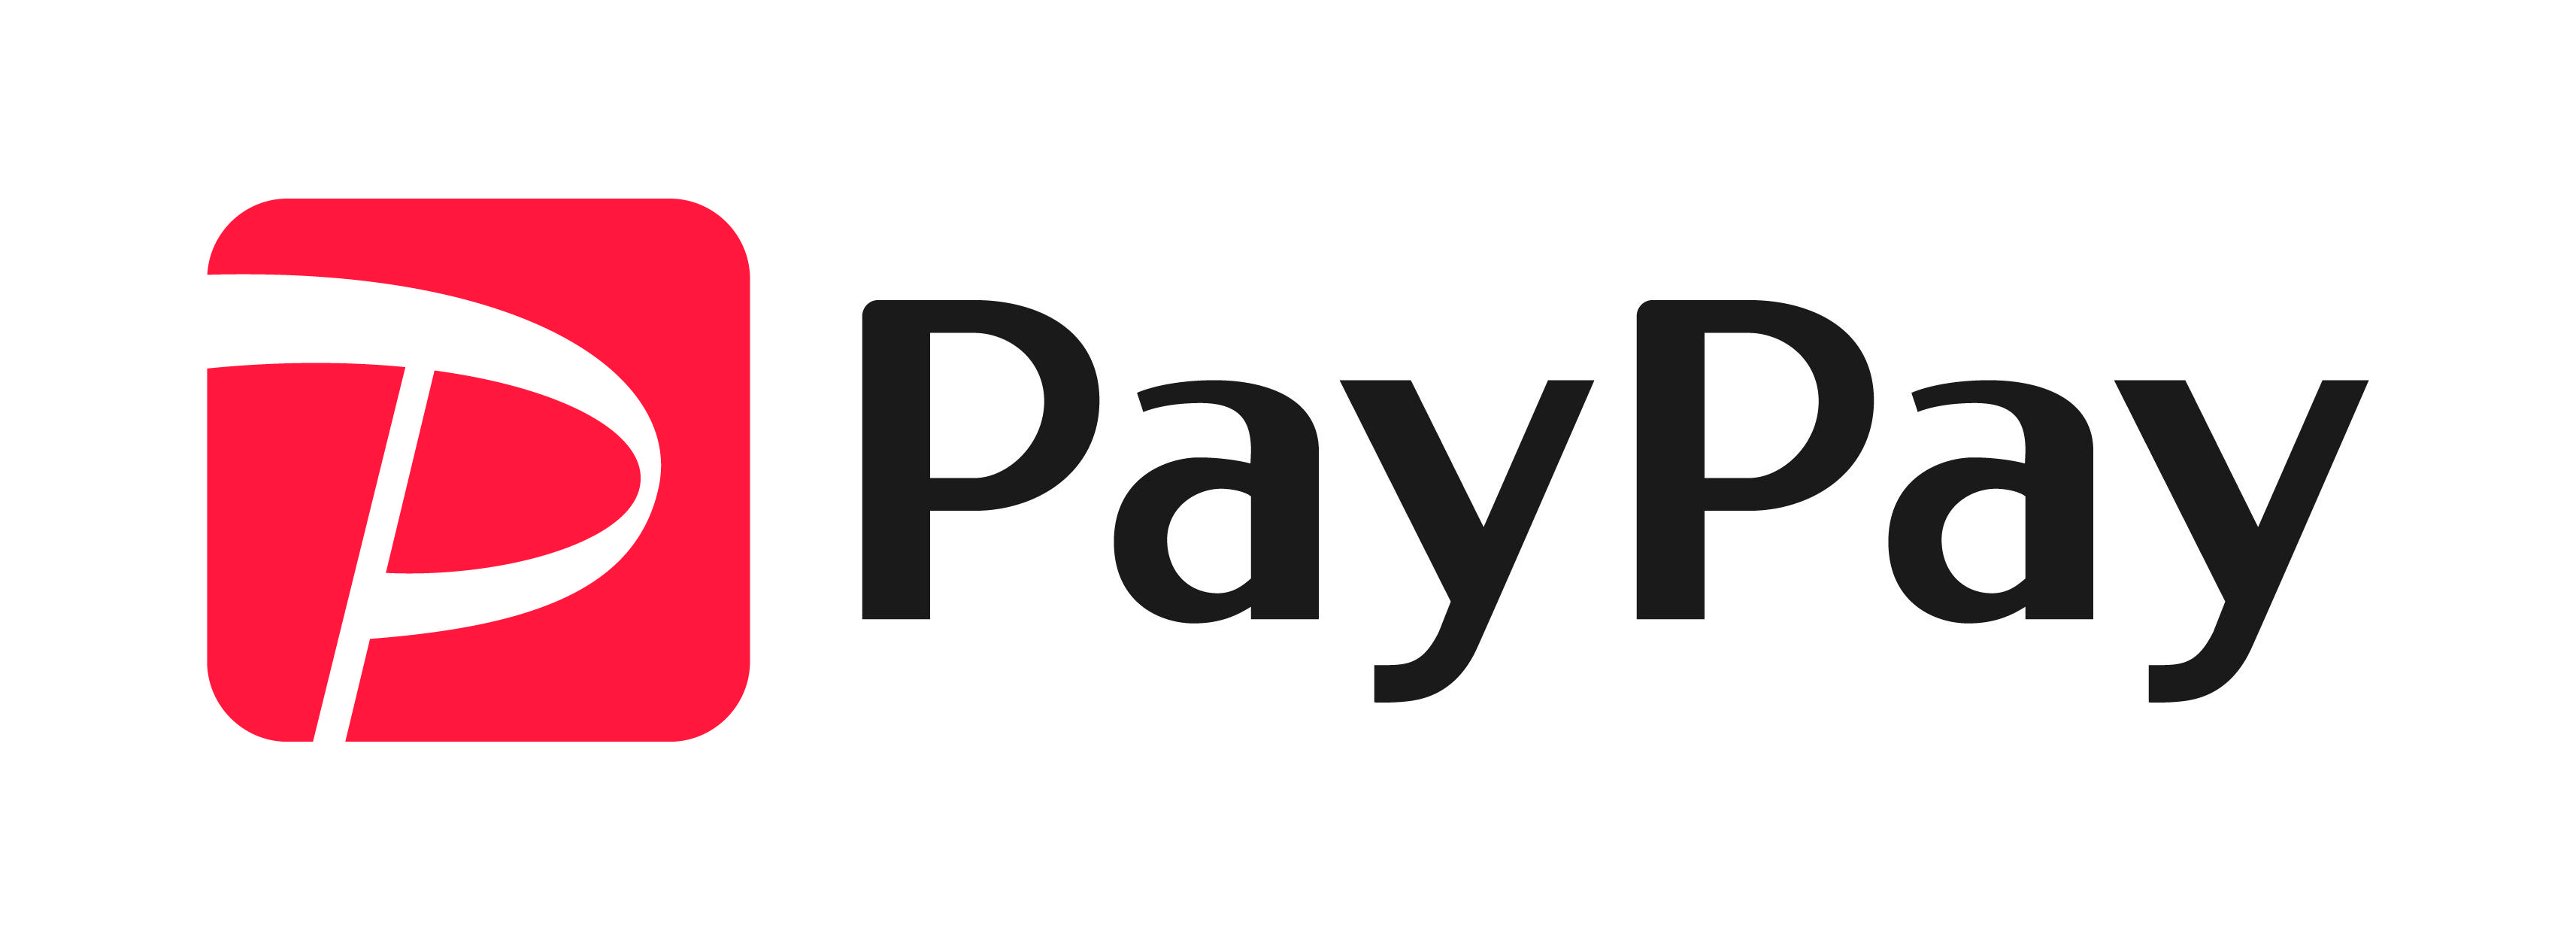 PayPay_1_cmyk.jpg